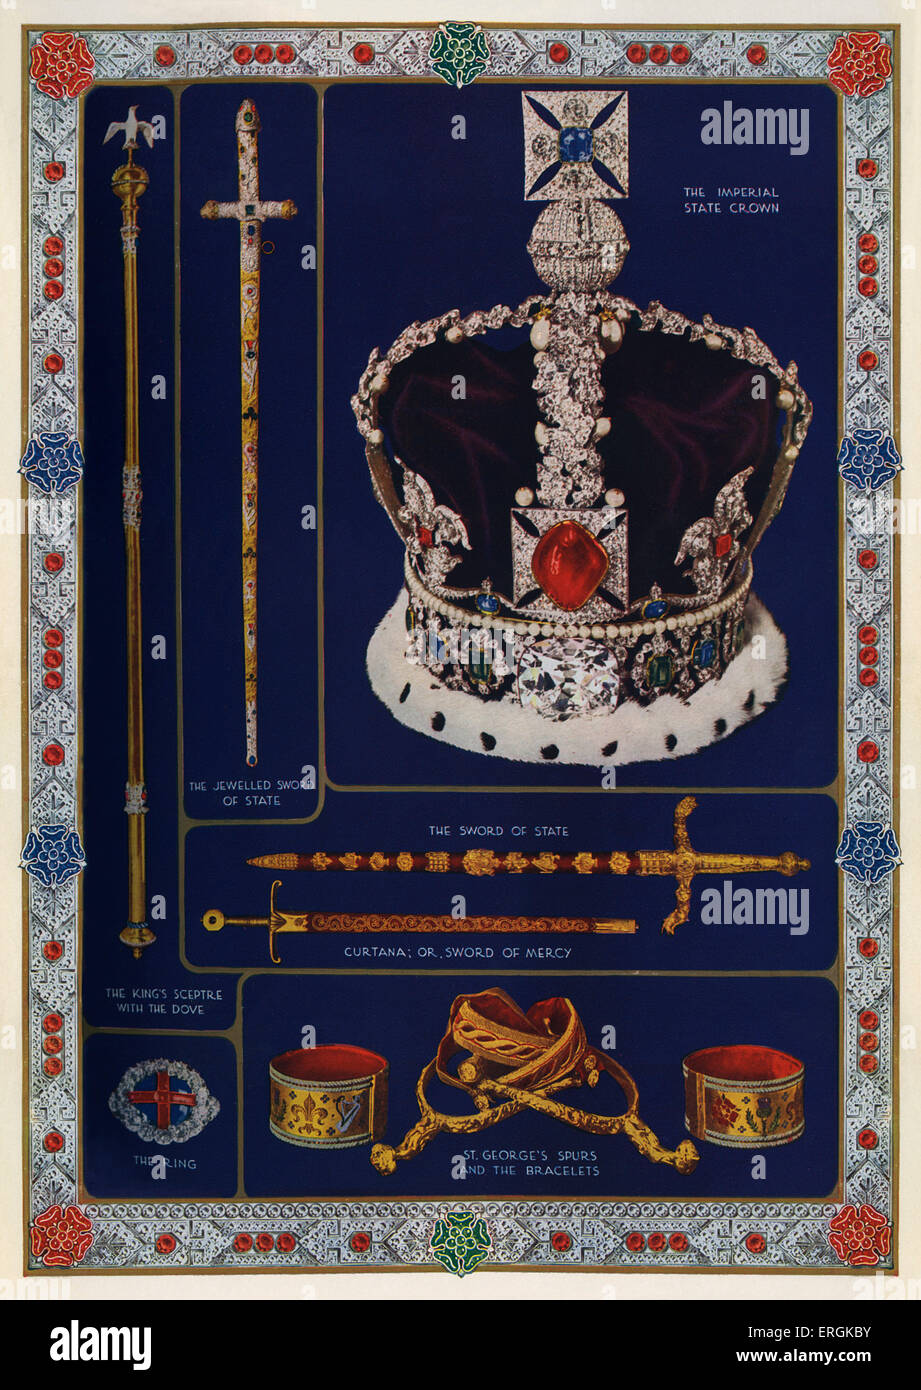 Objets symboliques de la souveraineté de la Grande-Bretagne, a pris des dispositions pour le couronnement du roi George VI, 1936. La couronne impériale ; le Banque D'Images